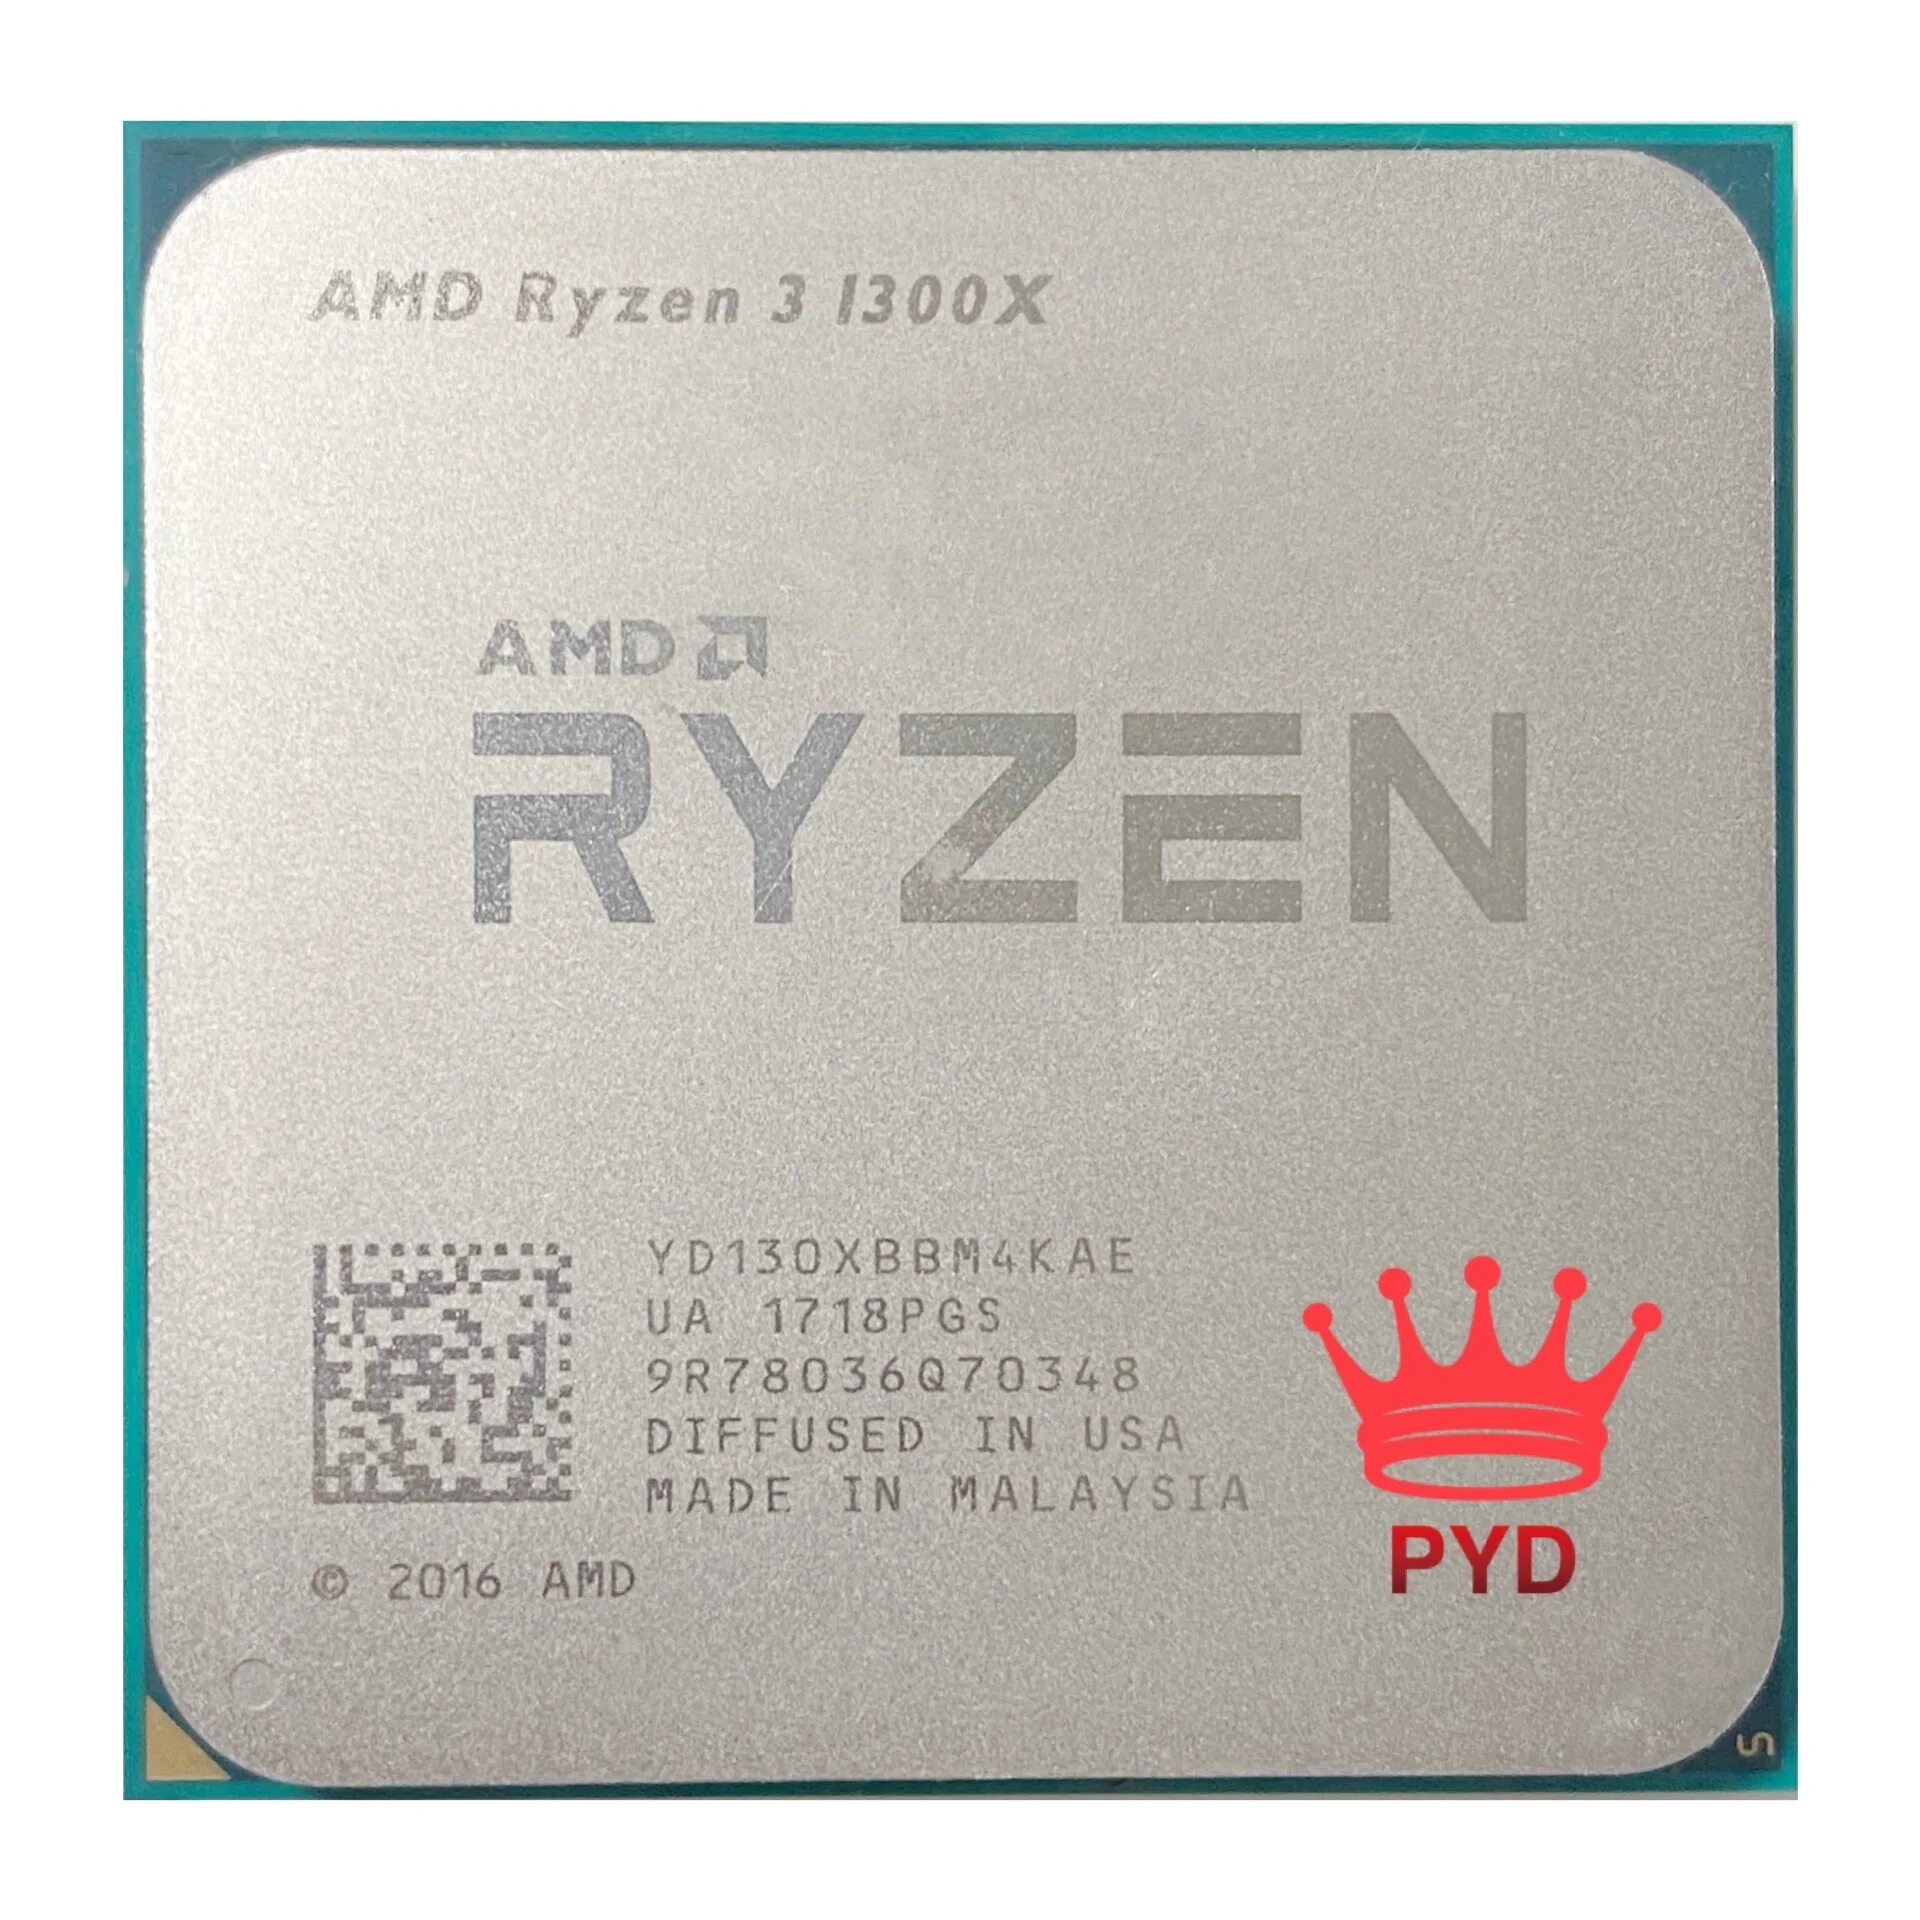 Ryzen 3 pro 1300. AMD Ryzen 3 1300x Quad-Core Processor 3.50 GHZ. Ryzen 3 1300x. XBBM.